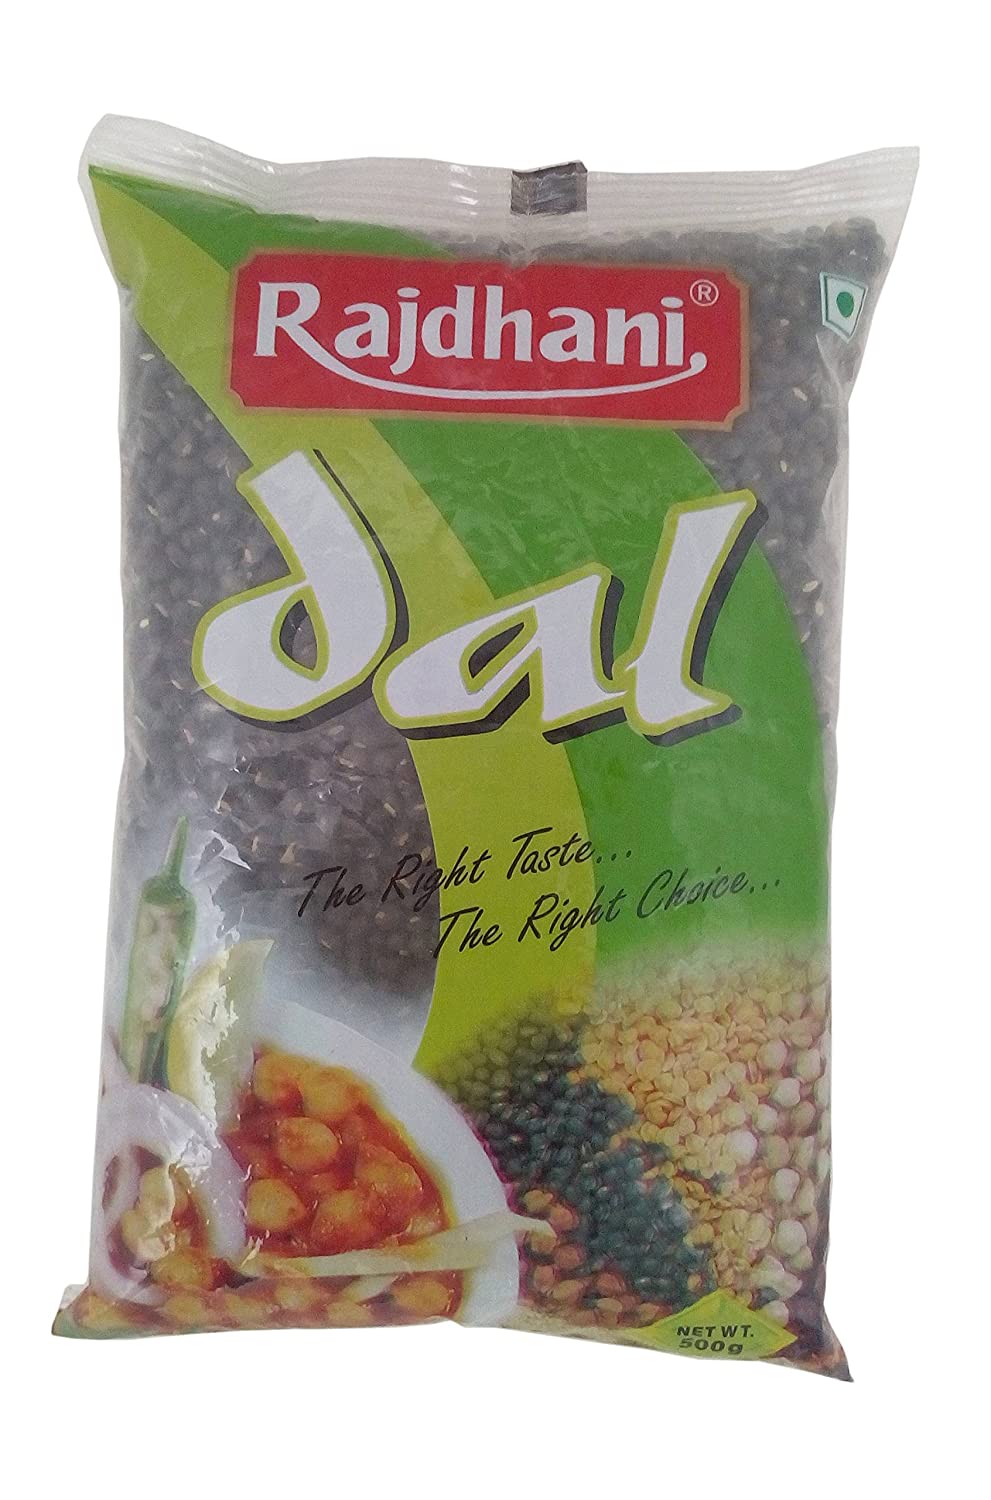 Rajdhani Dal - Urad Sabut, 500g Pack